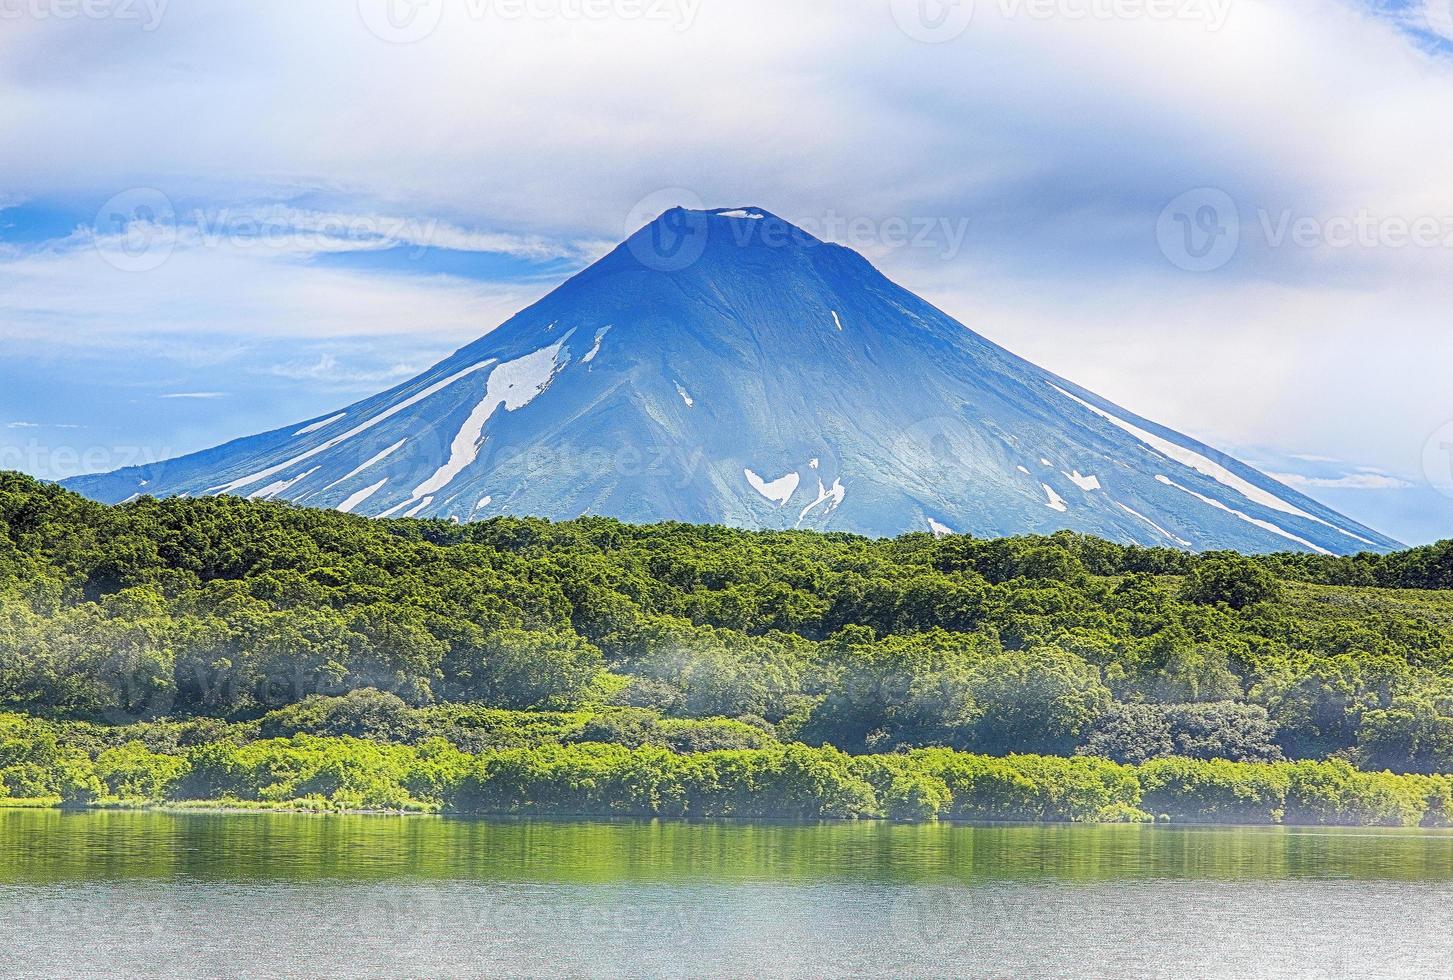 The volcano in Kamchatka photo